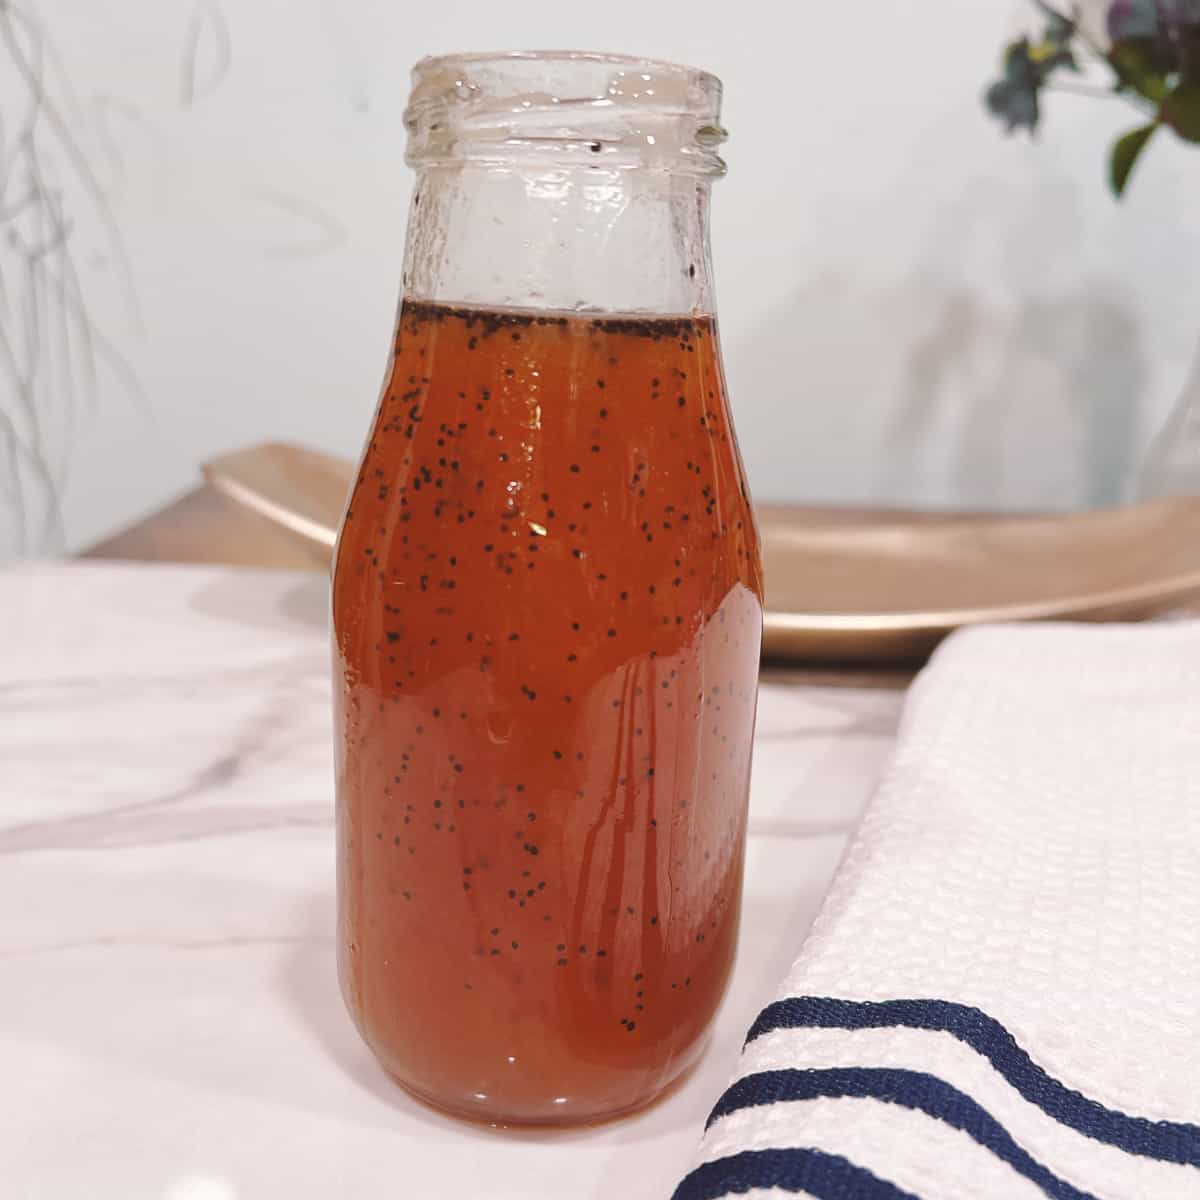 sweet onion sauce in a glass bottle